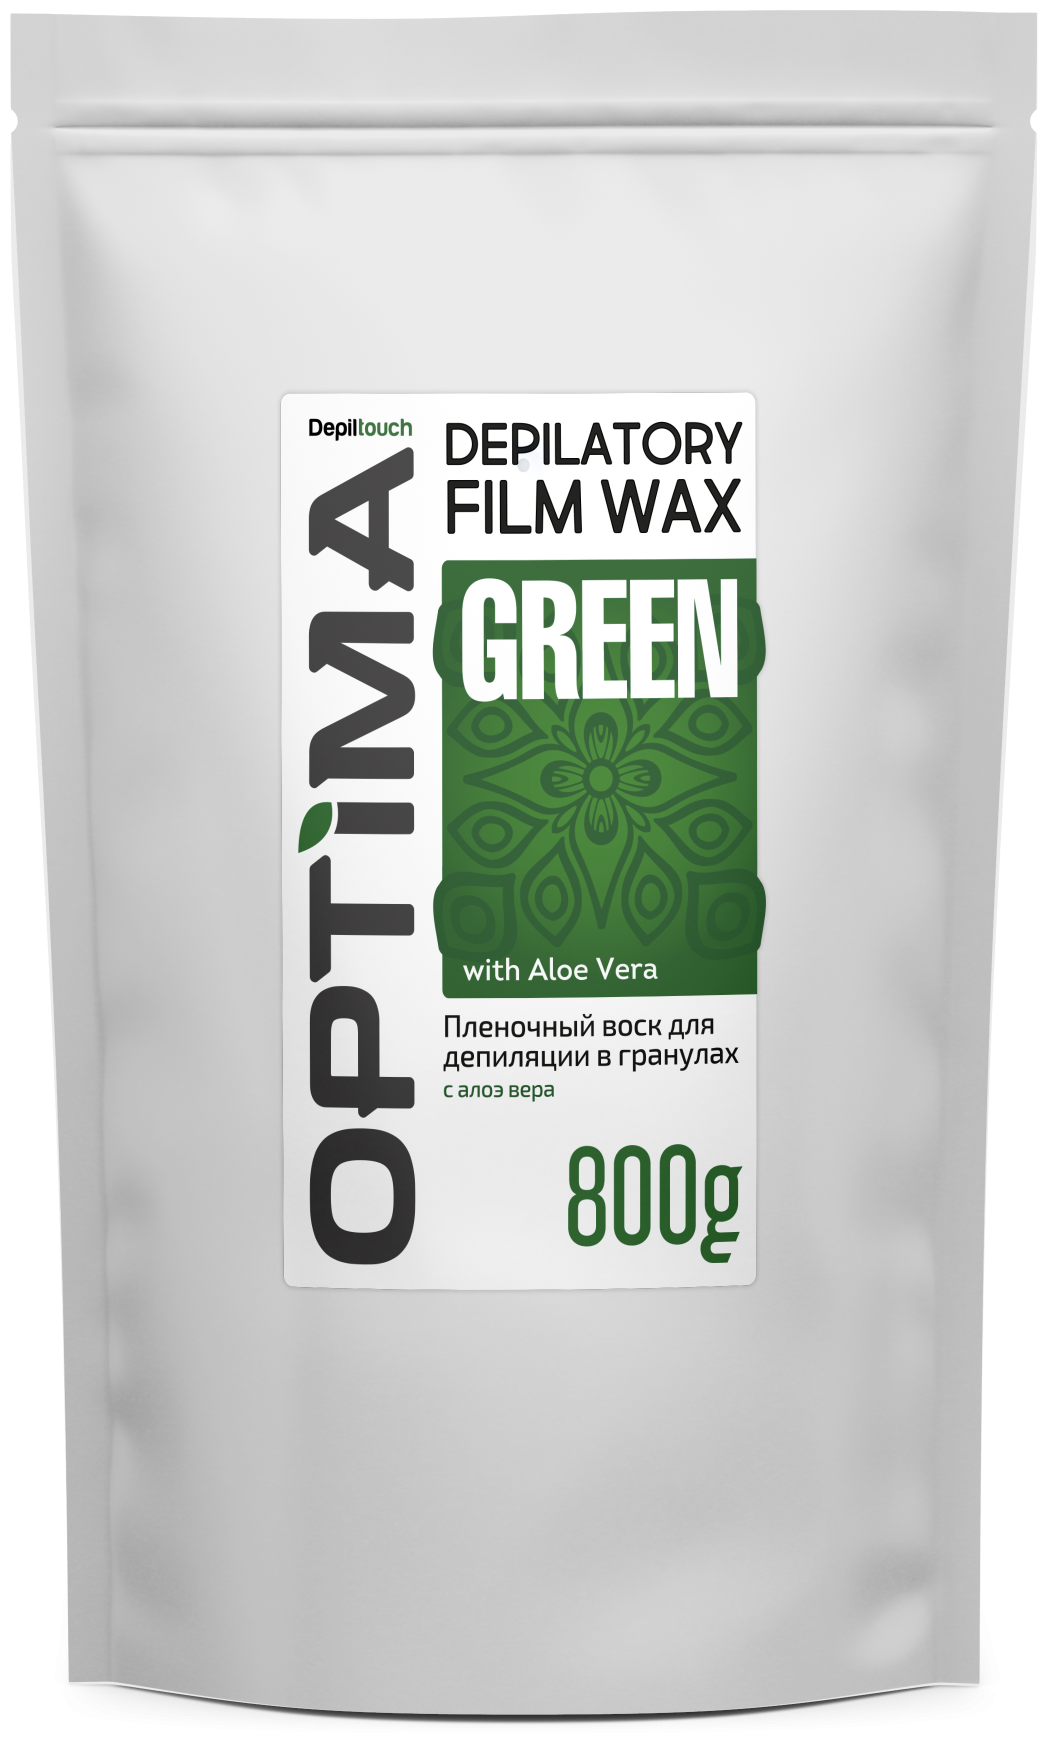 DEPILTOUCH PROFESSIONAL Optima Green Пленочный воск для депиляции в гранулах, 800 гр